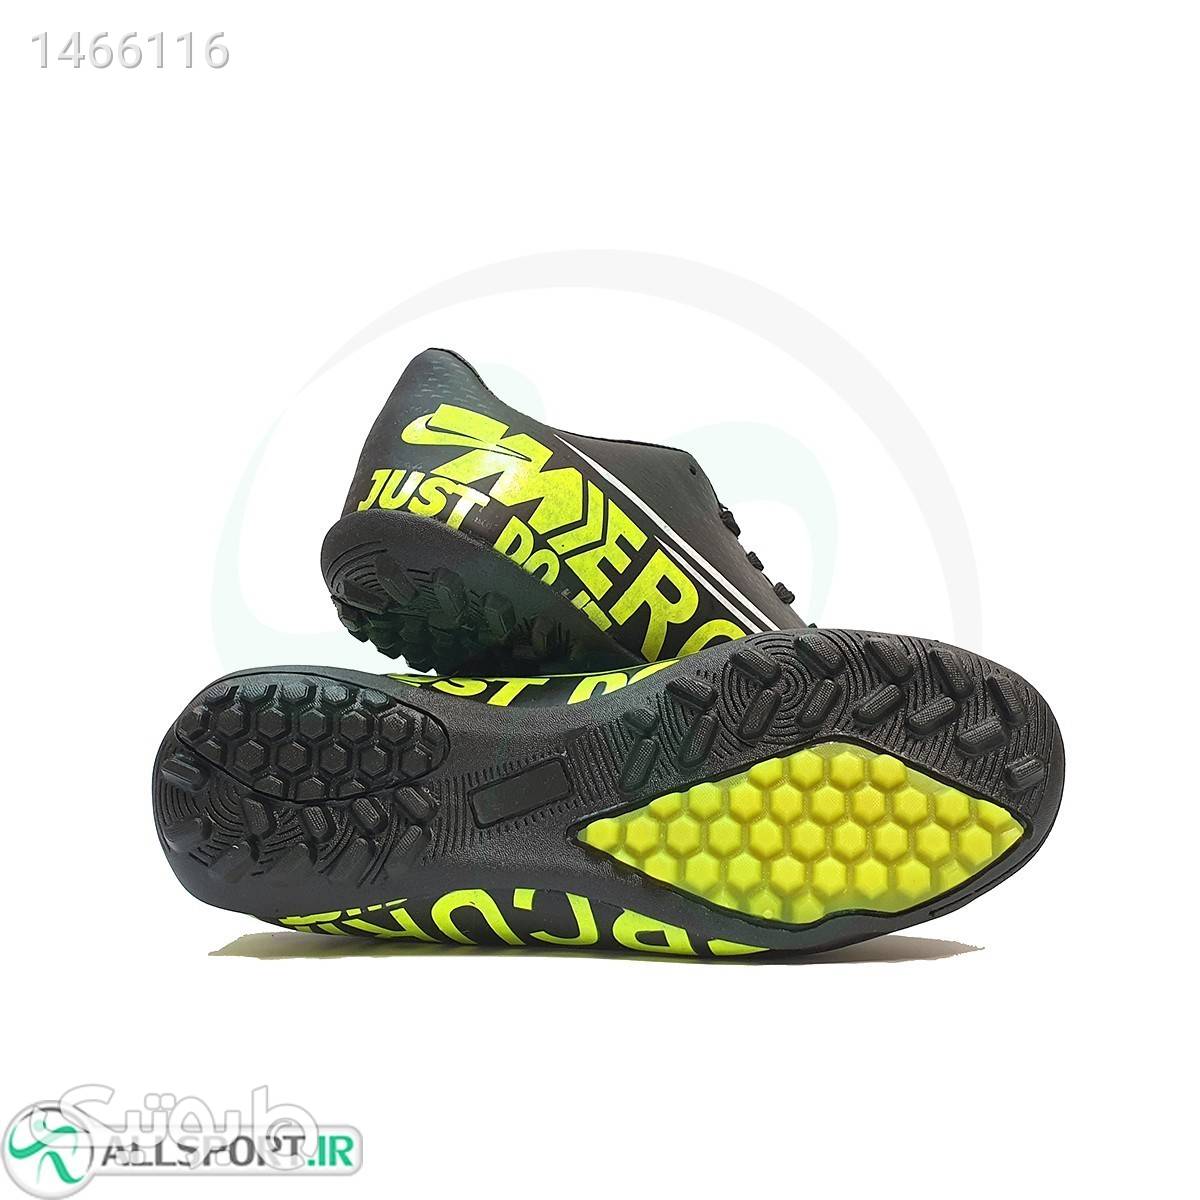 کفش چمن مصنوعی سایز کوچک نایک مرکوریالمشکی Nike Mercurial Black مشکی کیف و کفش بچگانه